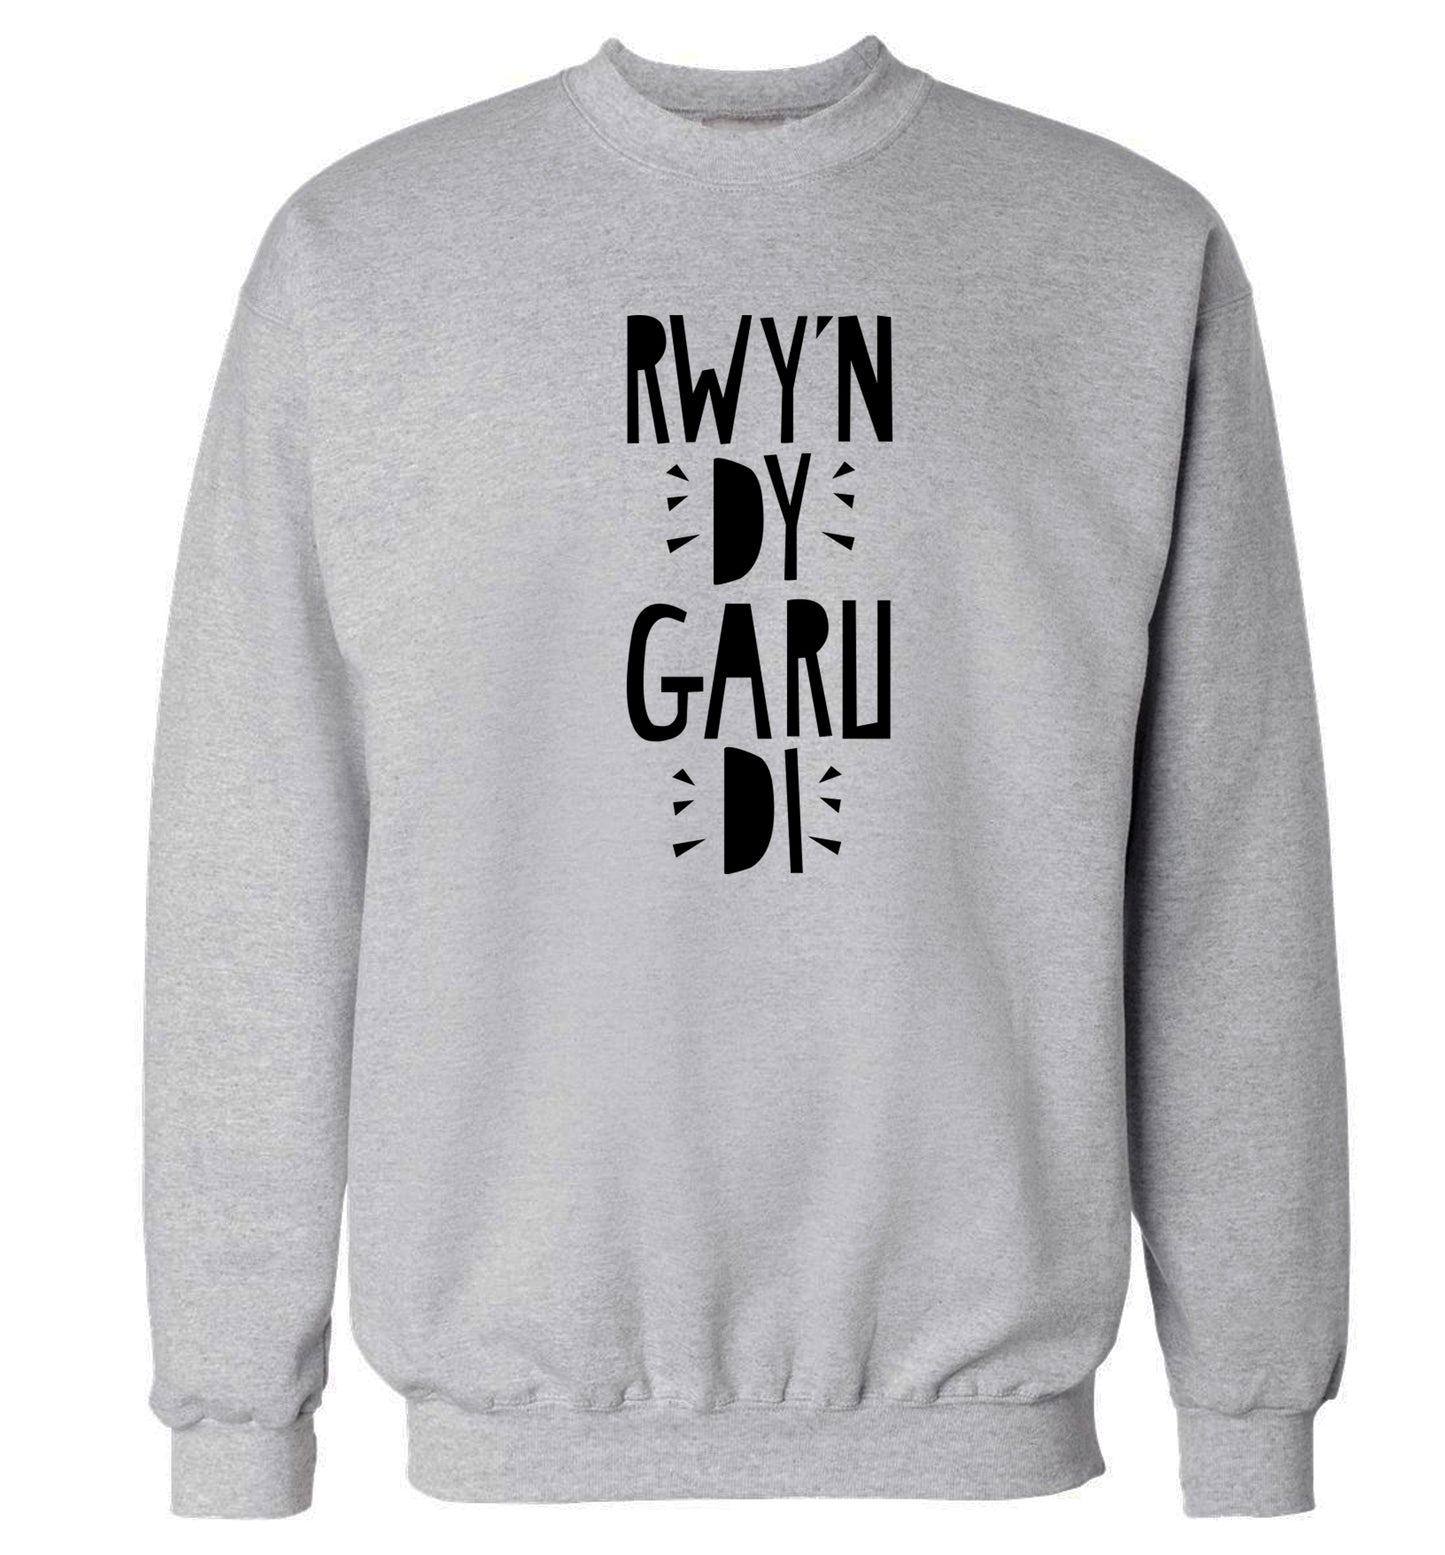 Rwy'n dy garu di - I love you Adult's unisex grey Sweater 2XL